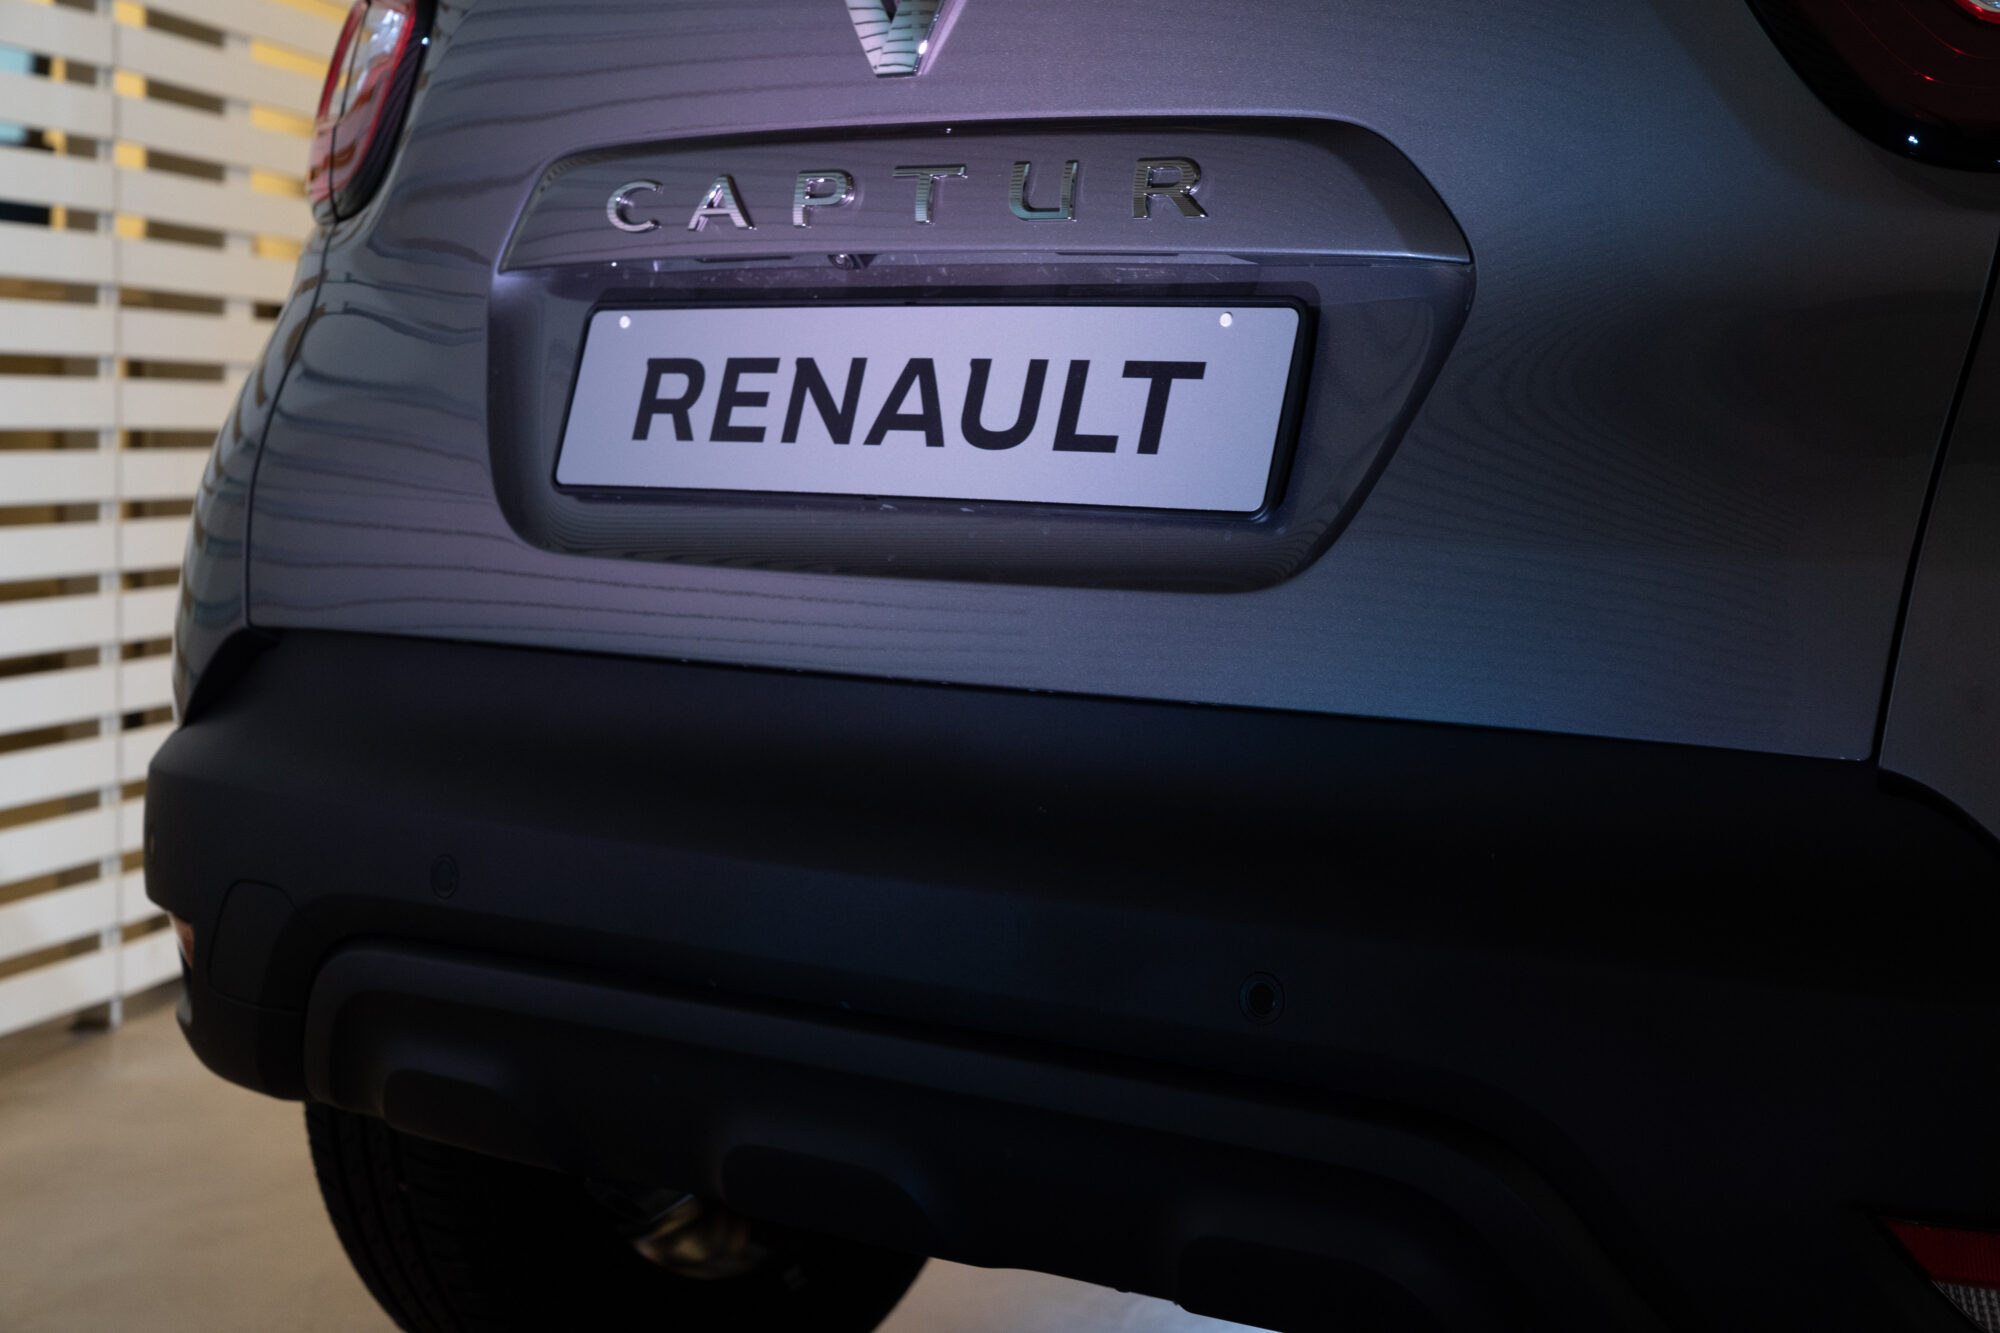 CS- Il rinnovo della gamma crossover Renault si completa con CAPTUR SPORT EDITION